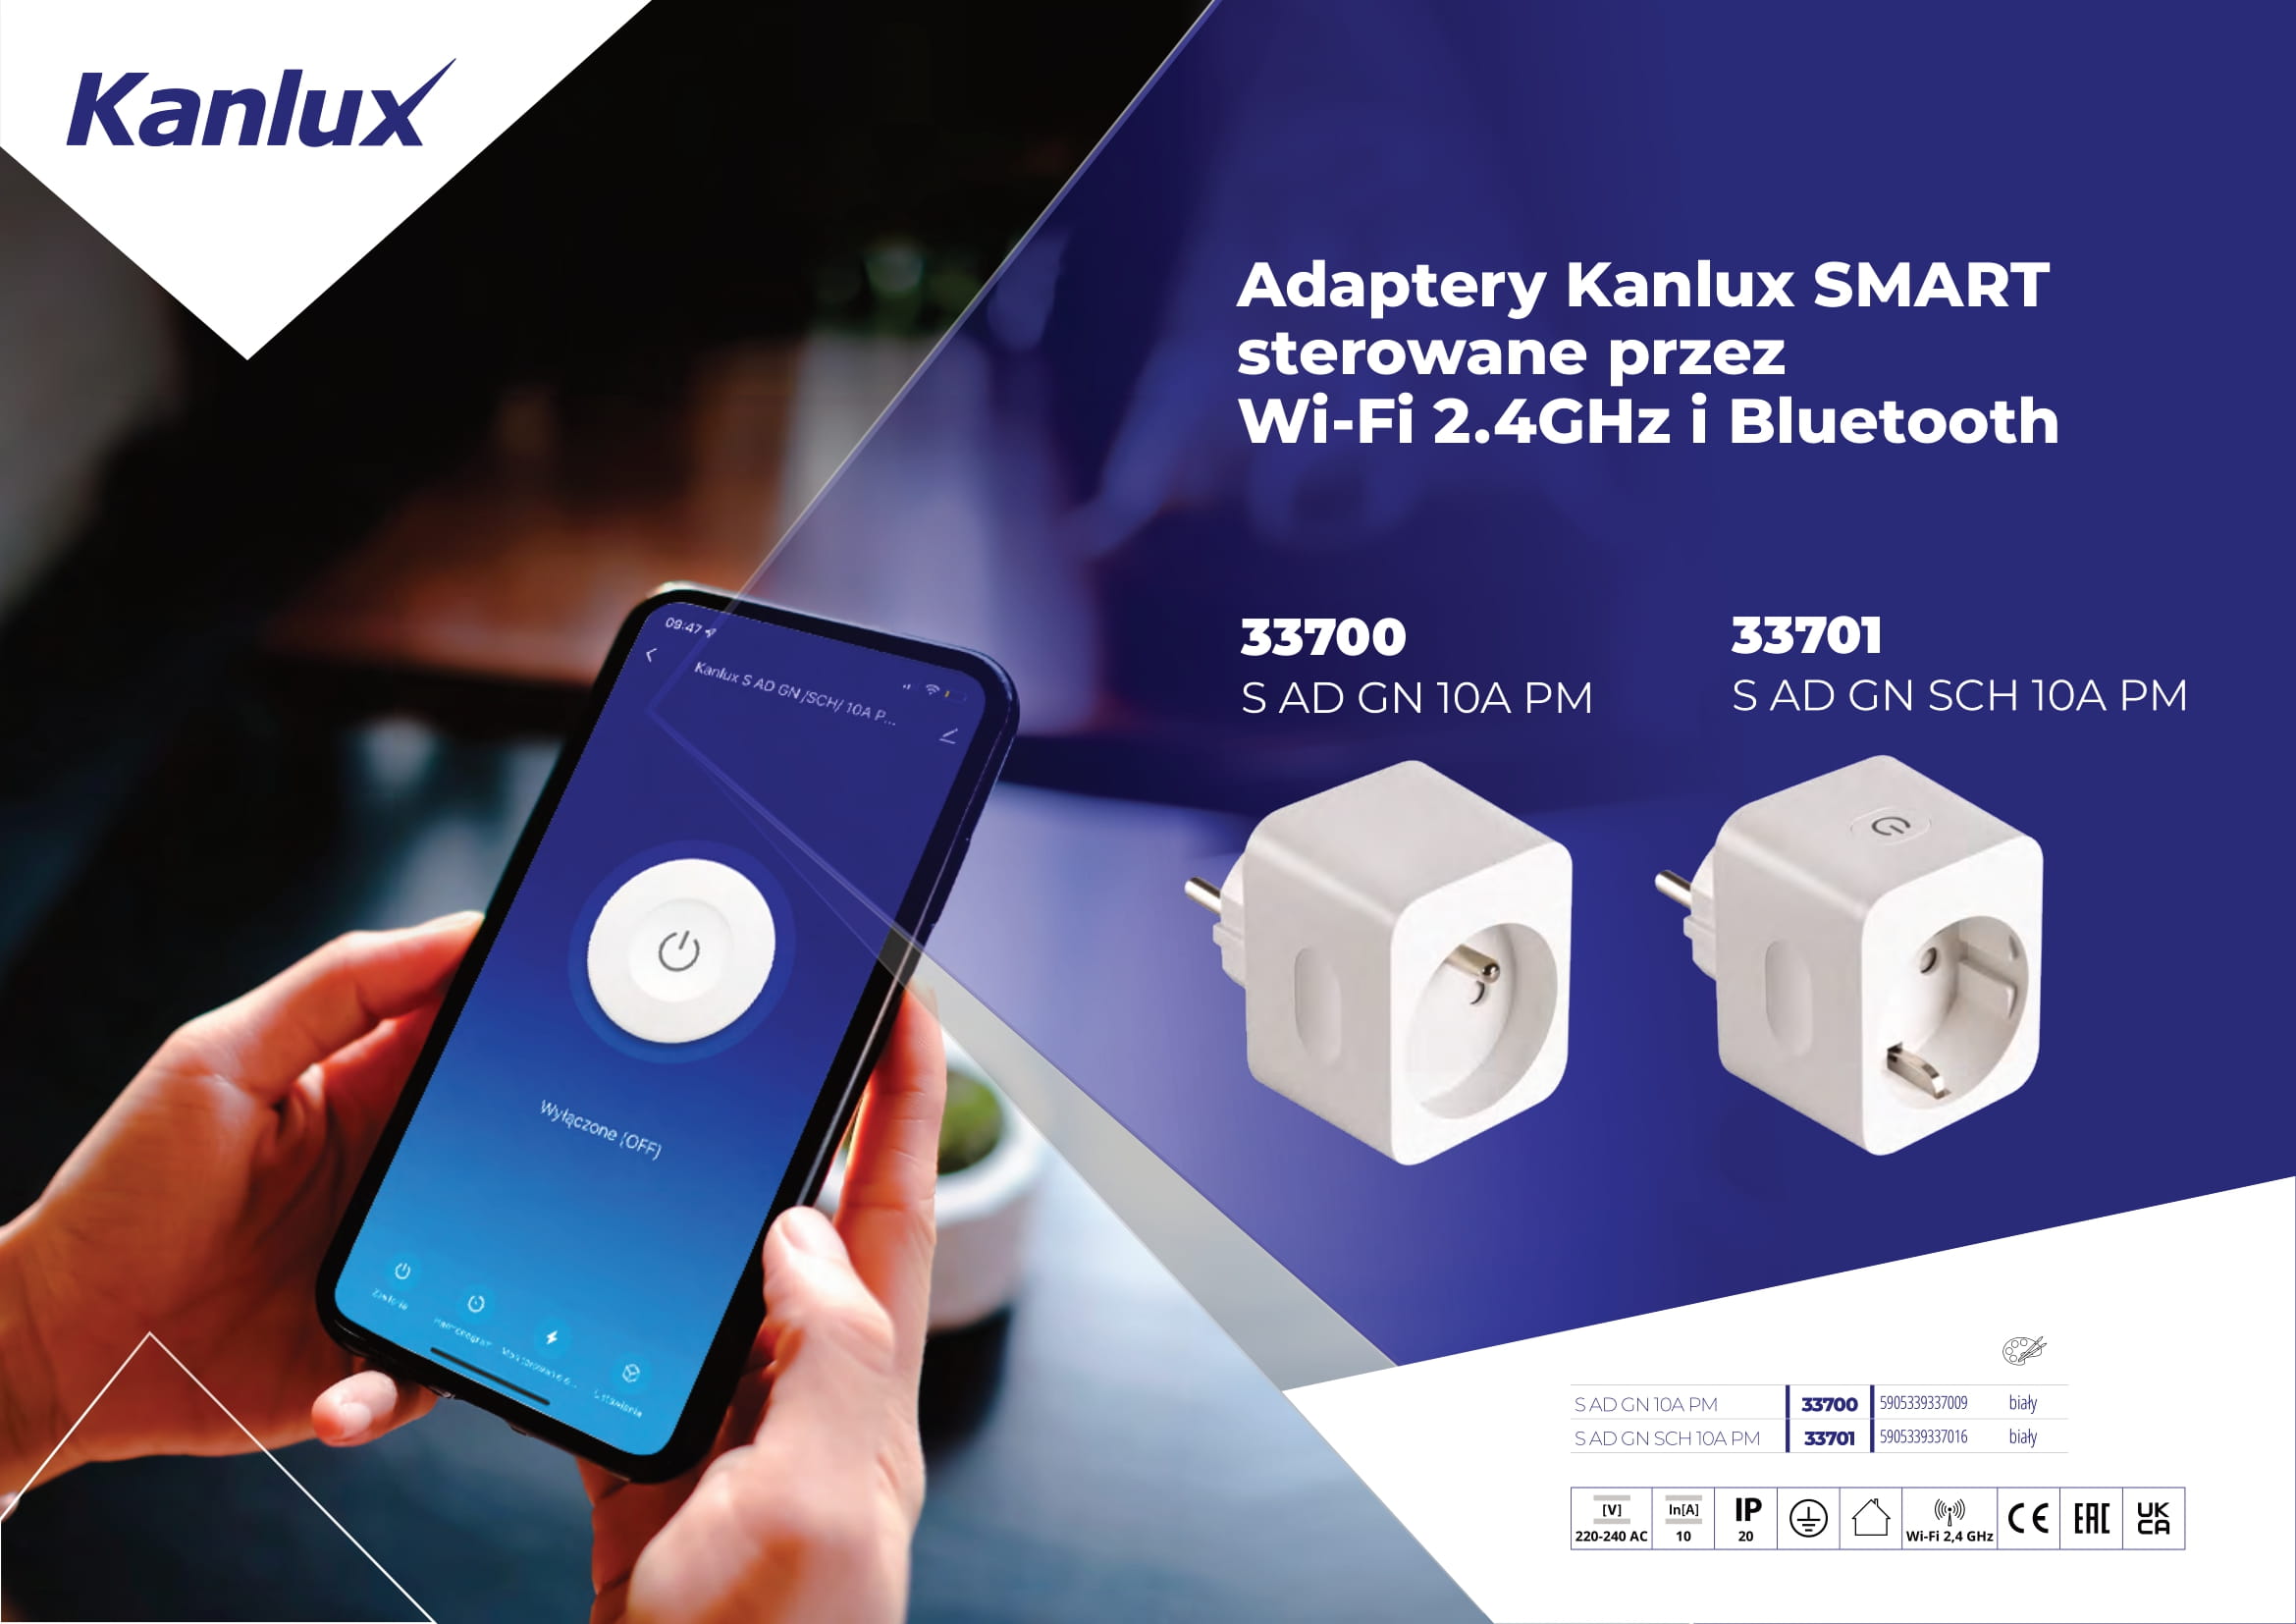 Adaptery Kanlux SMART sterowane przez Wi-Fi 2.4Ghz i Bluetooth